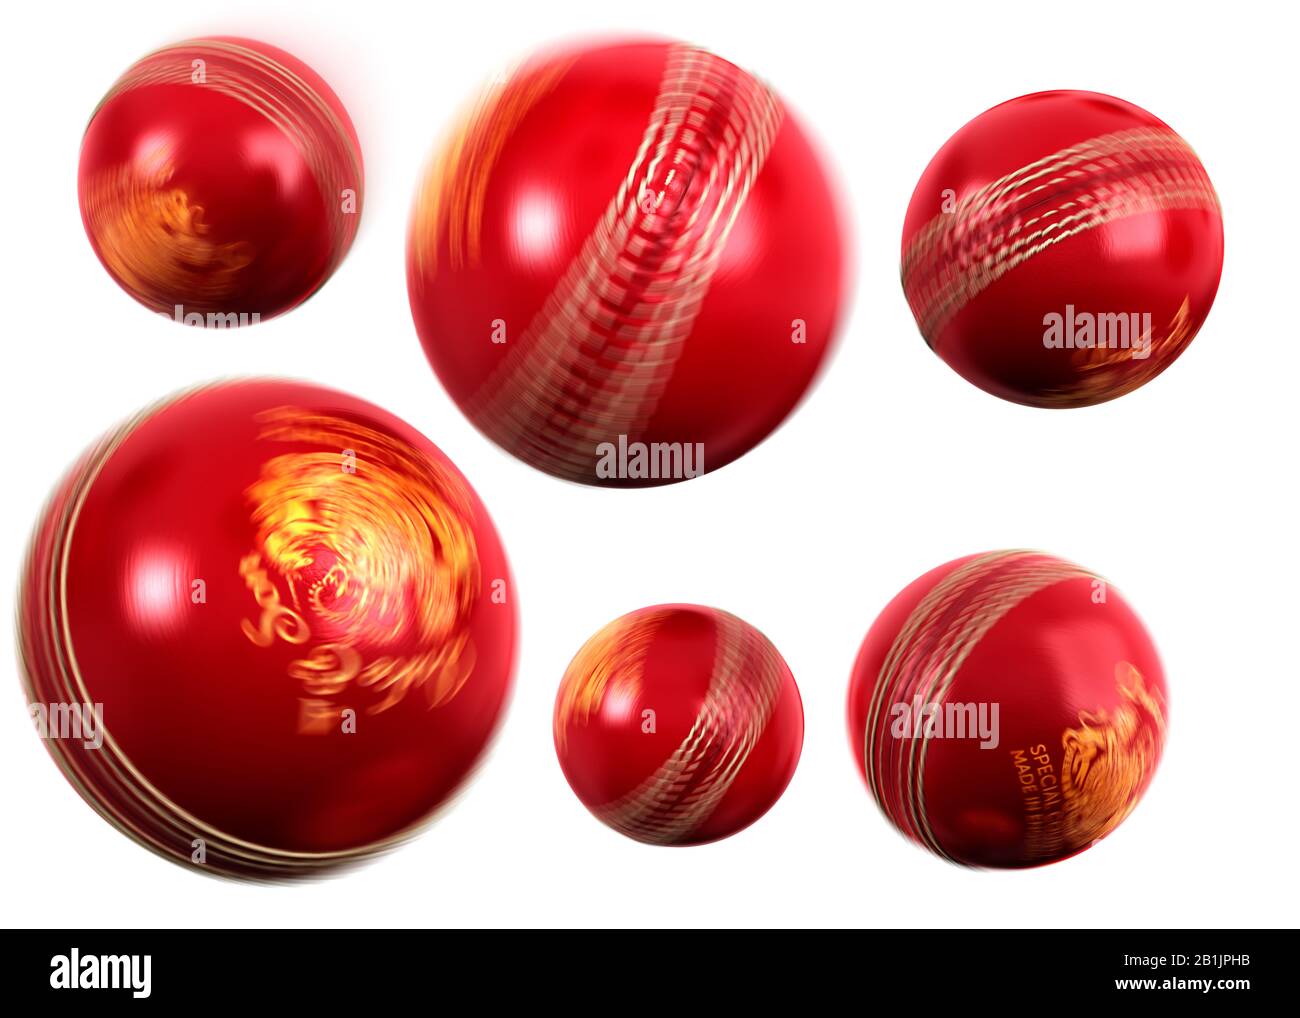 Les balles de cricket qui tournent en mouvement sont coupées sur fond blanc Banque D'Images